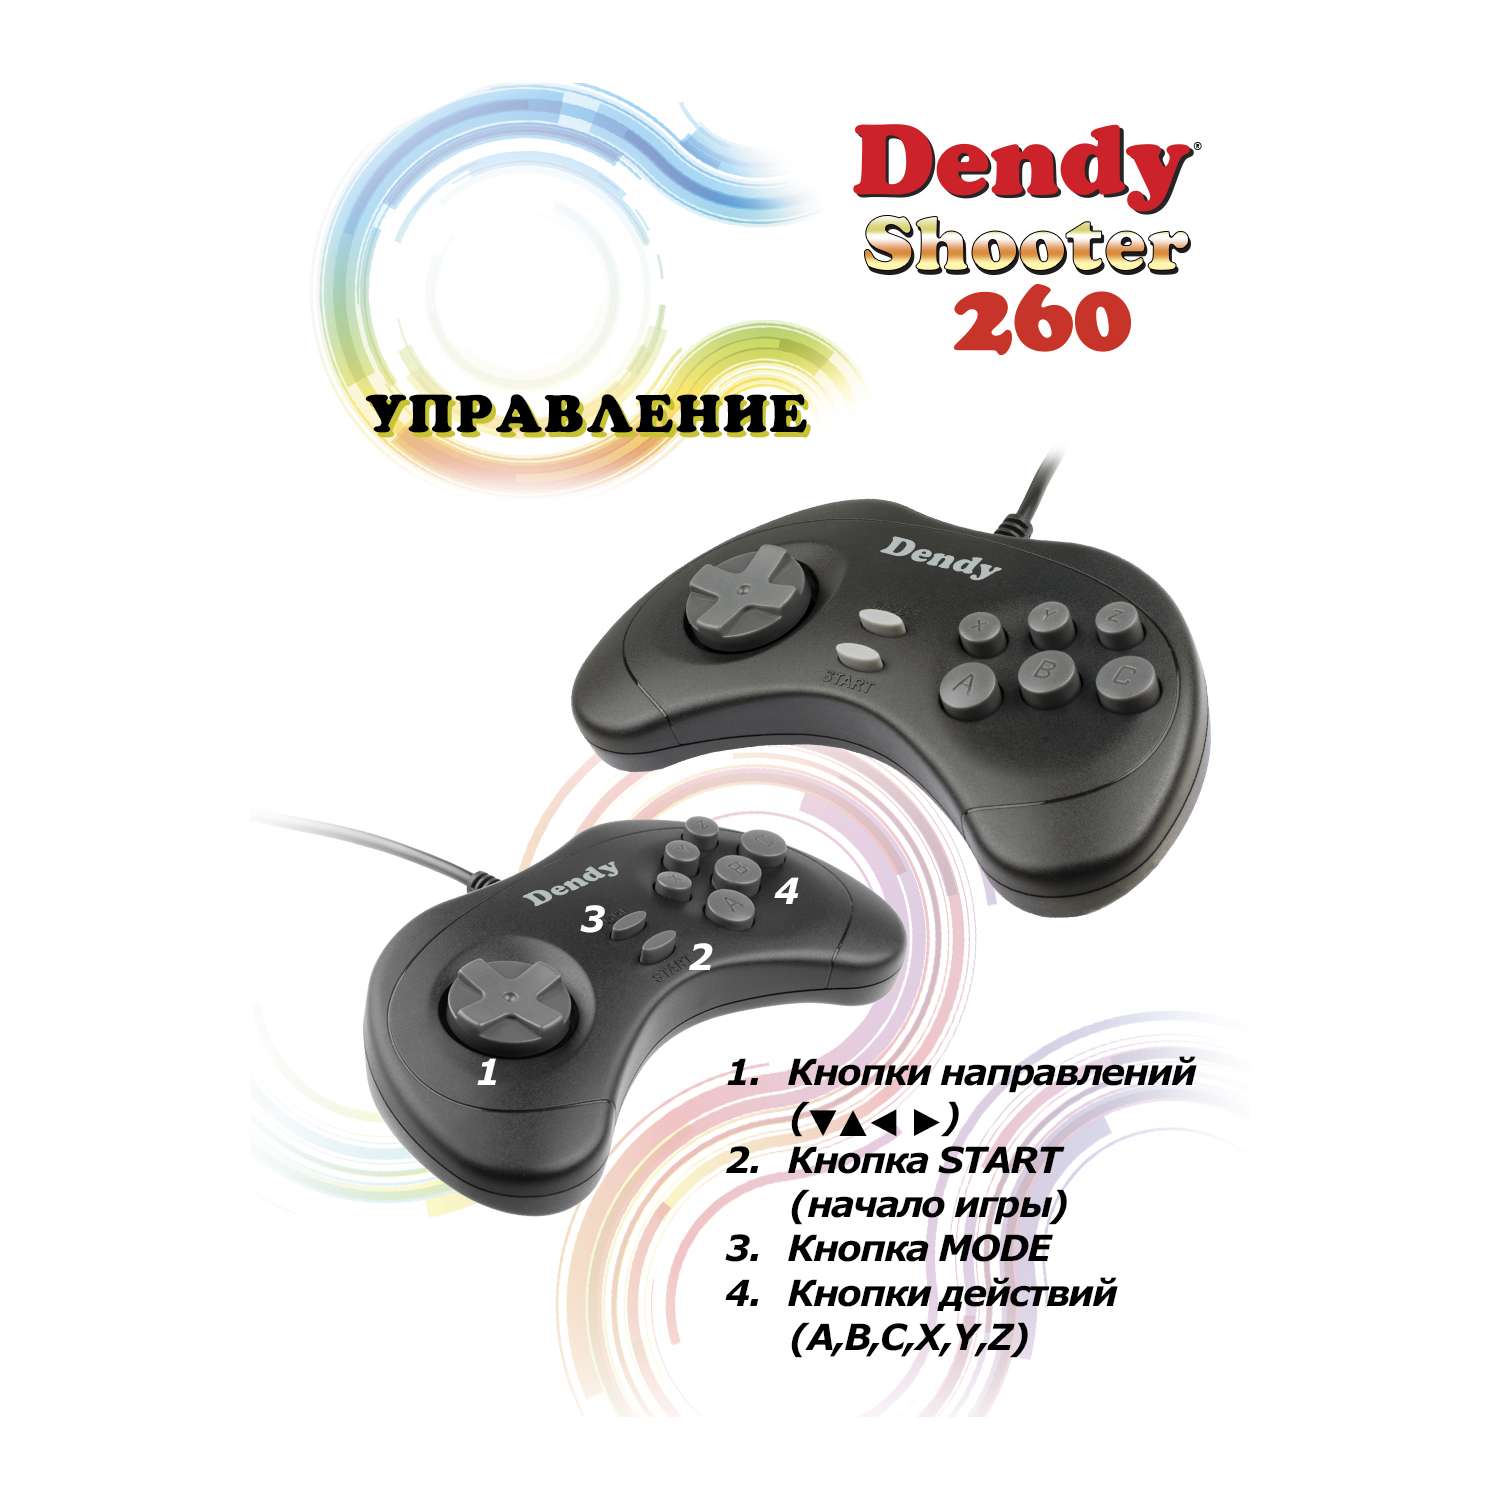 Игровая приставка Dendy Dendy Shooter 260 встроеннах игр + световой пистолет - фото 7